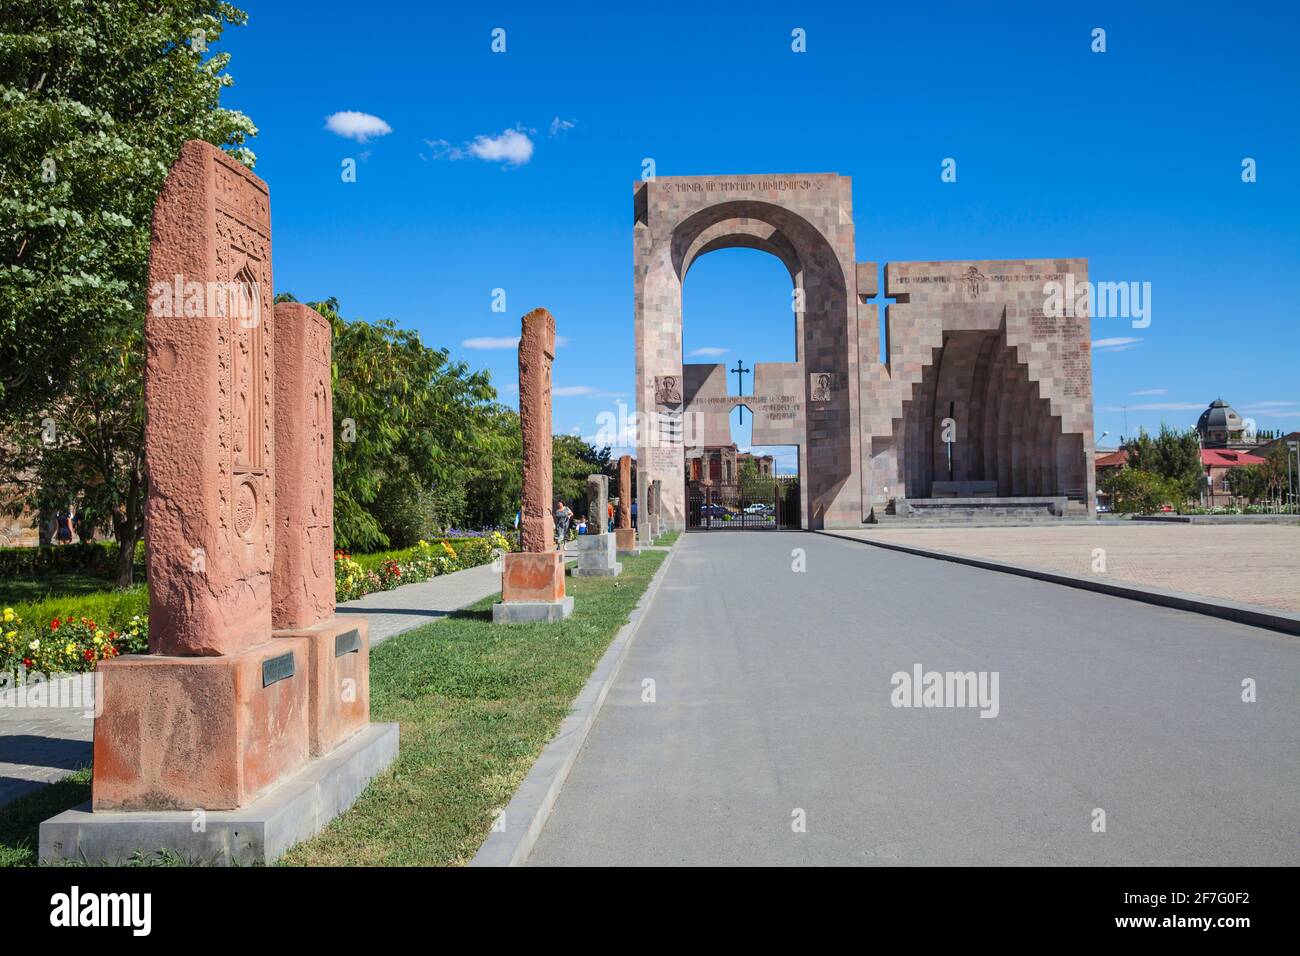 Armenia, complejo de Echmiadzin, Puerta de San Gregorio y el altar al aire libre Foto de stock